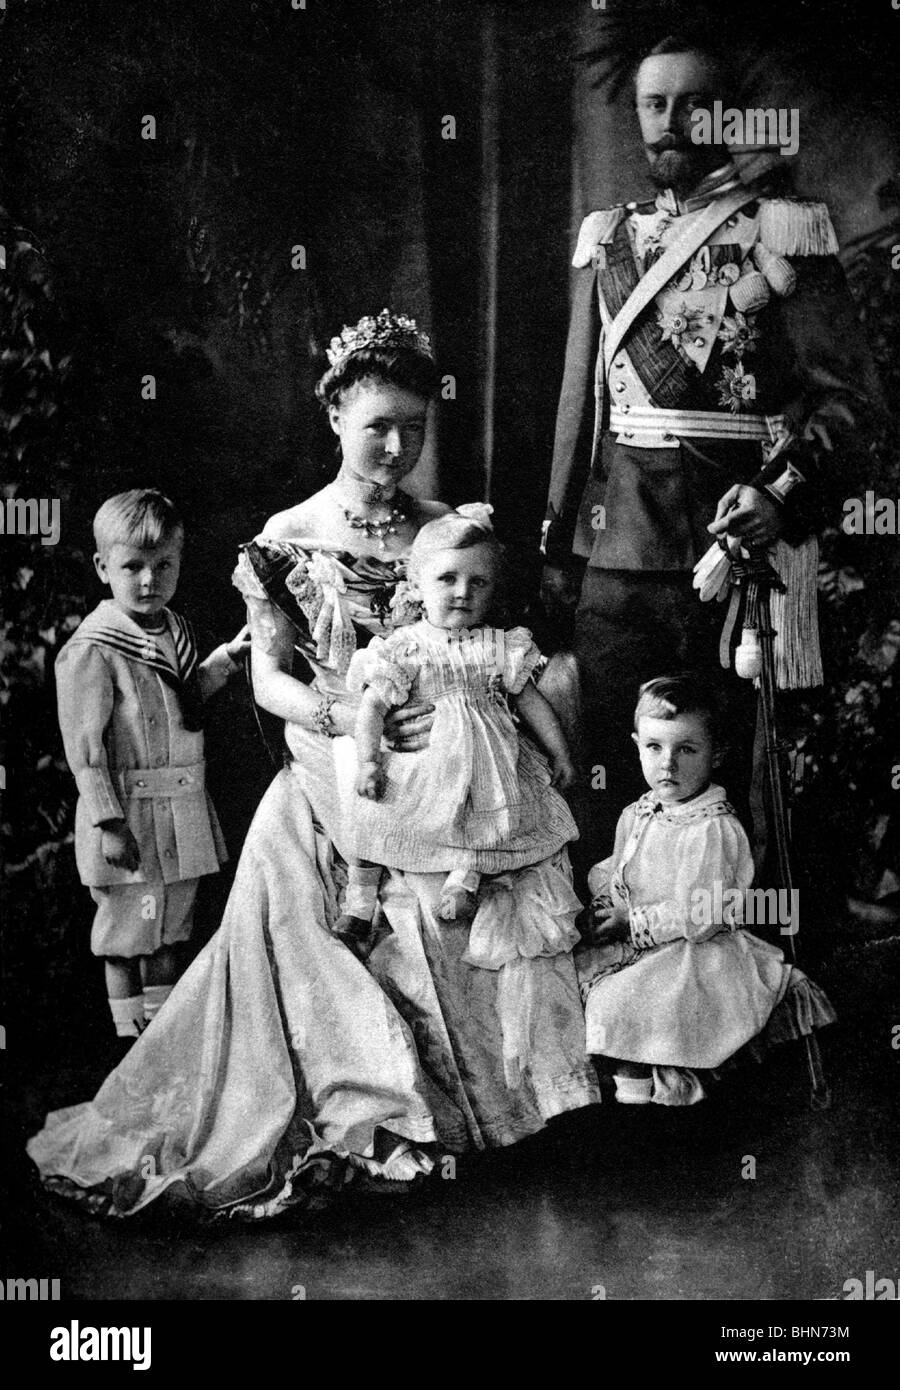 Leopold IV, 30.5.1871 - 30.12.1949, Principe di Lippe 25.10.1905 - 12.11.1918, foto di gruppo con la sua famiglia, cartolina, stampato nel 1907, Foto Stock